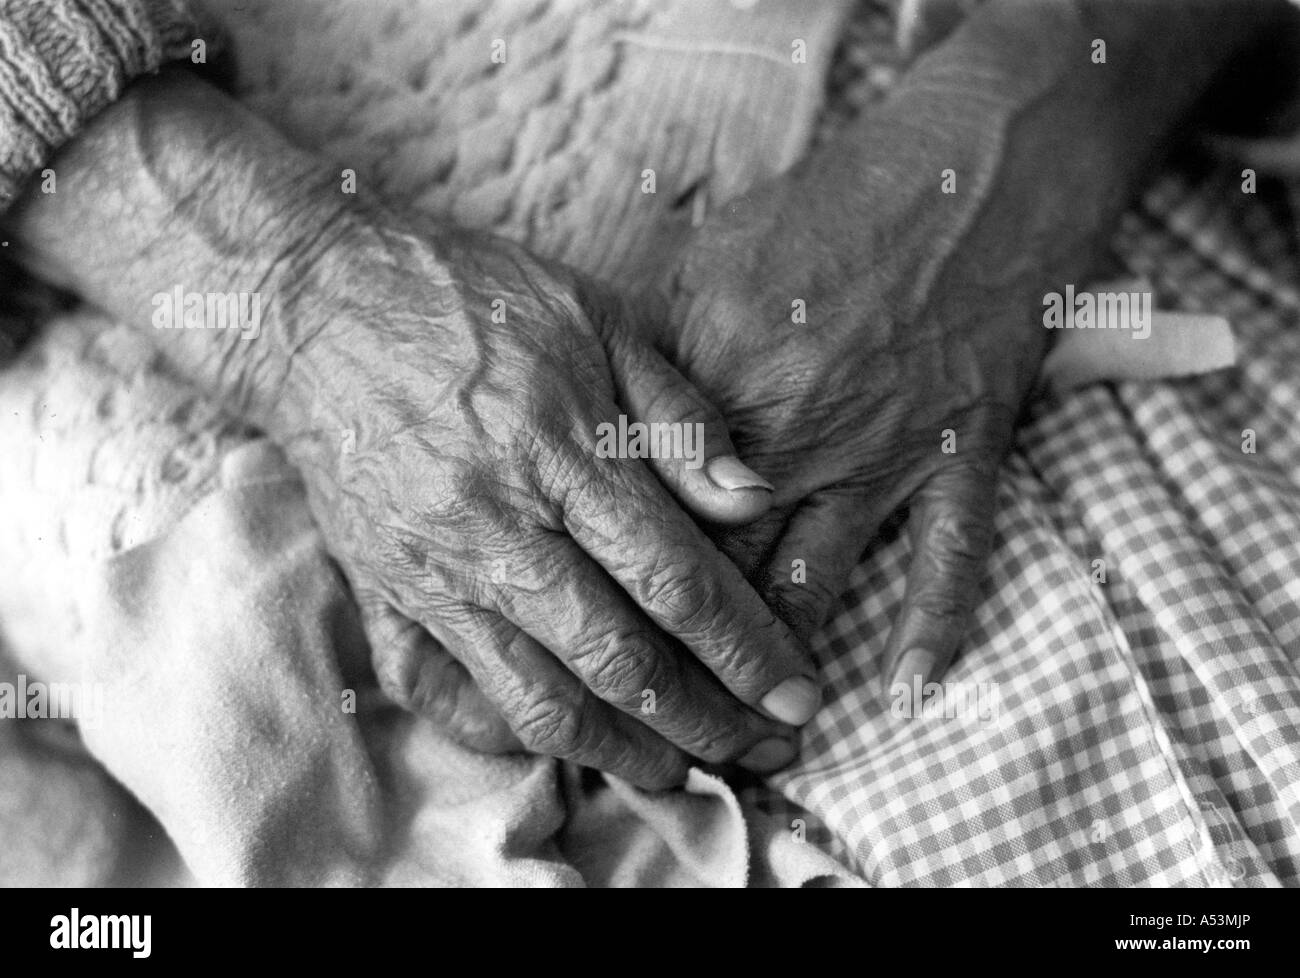 Painet ha1423 248 in bianco e nero di invecchiamento anziani mani 103 anno vecchia donna sucre Bolivia paese nazione in via di sviluppo meno Foto Stock